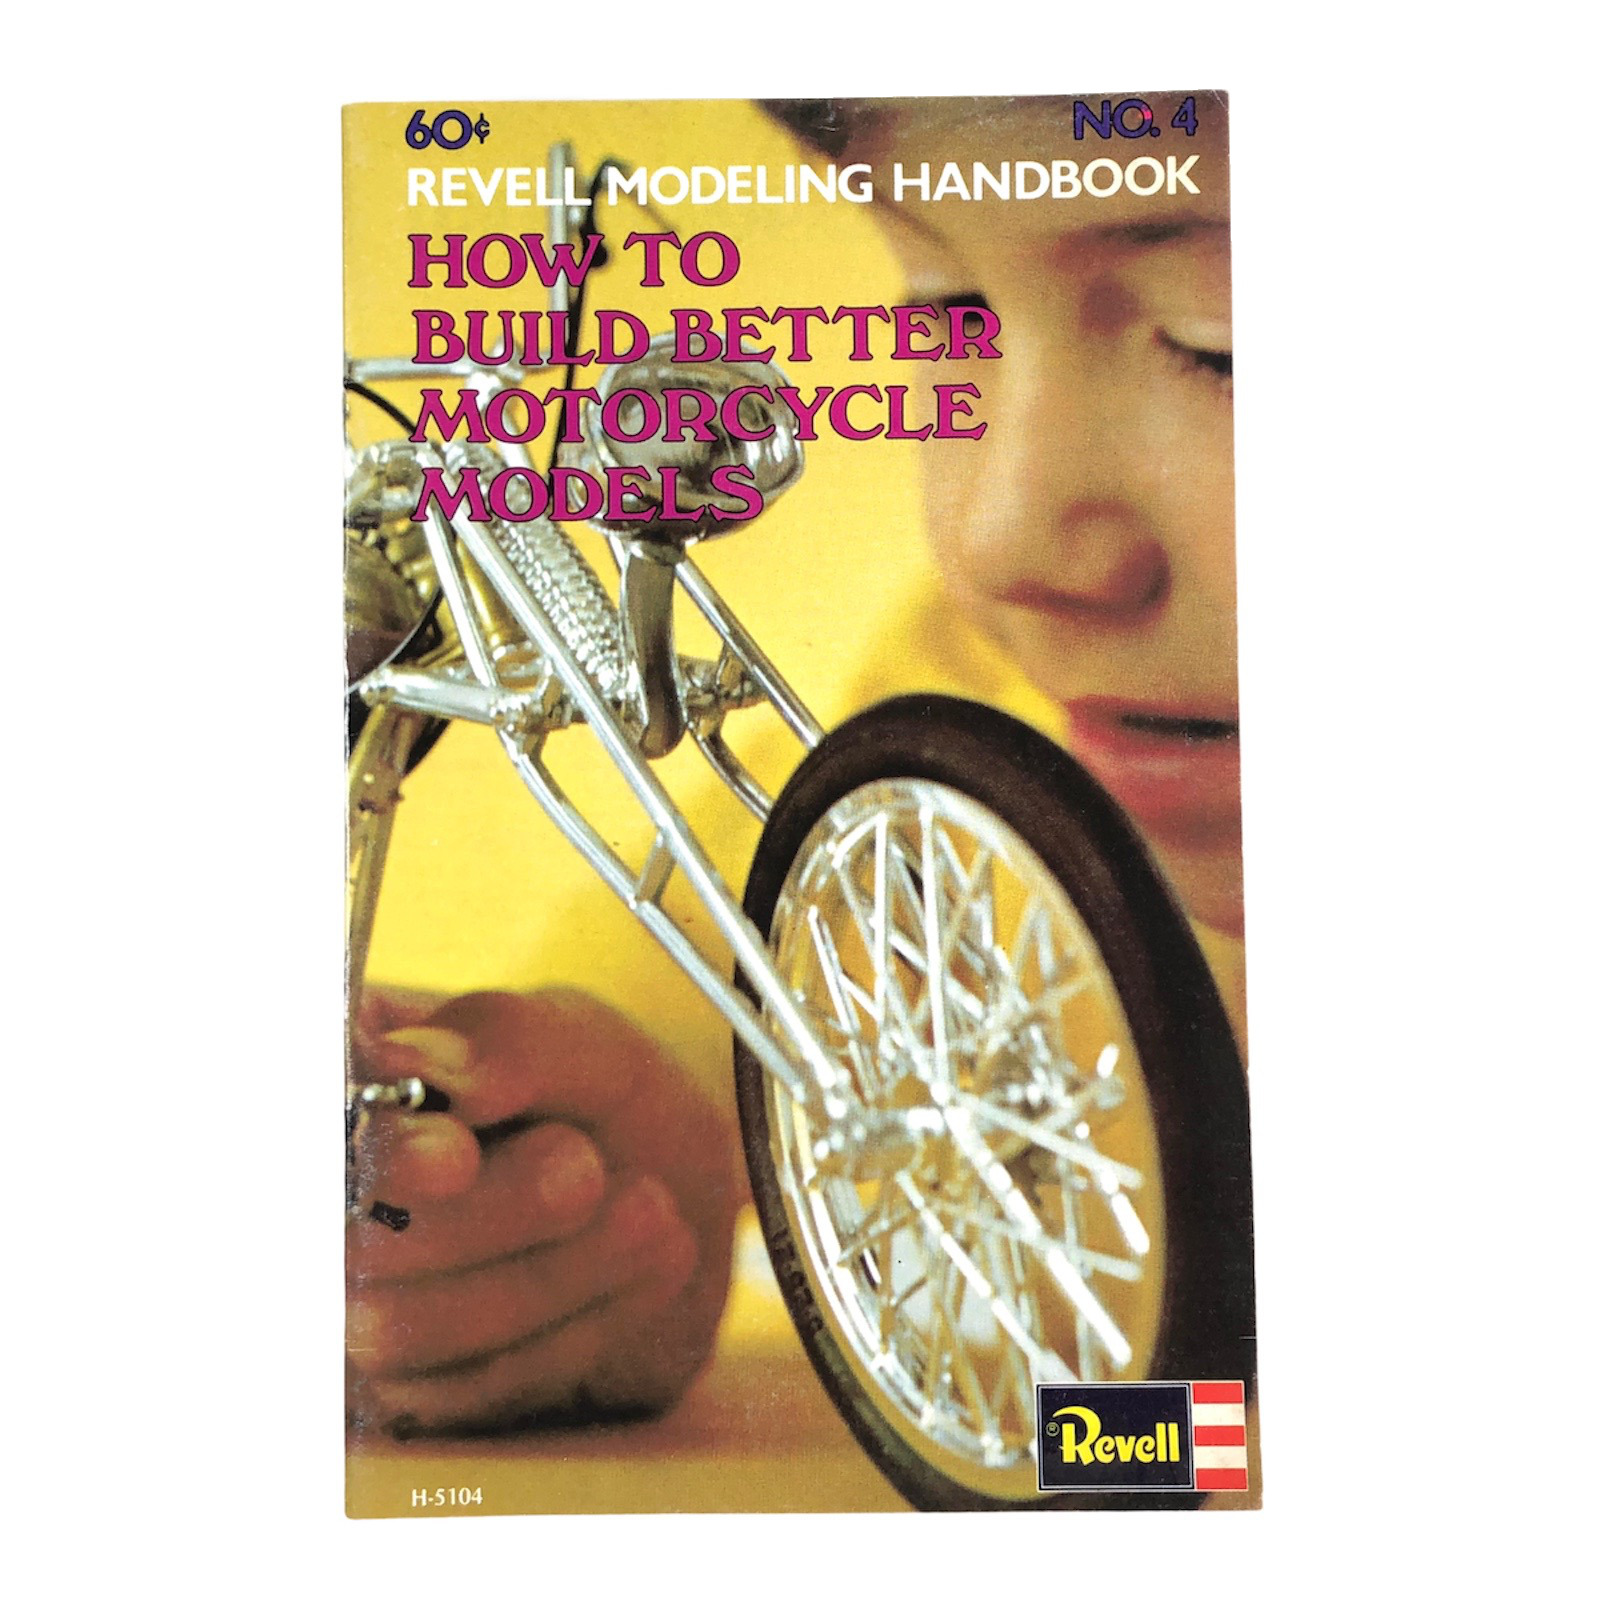 Vintage 1973 Revell Modeling Handbook Vol. 4 Motorcycles, Choppers, Custom Bikes